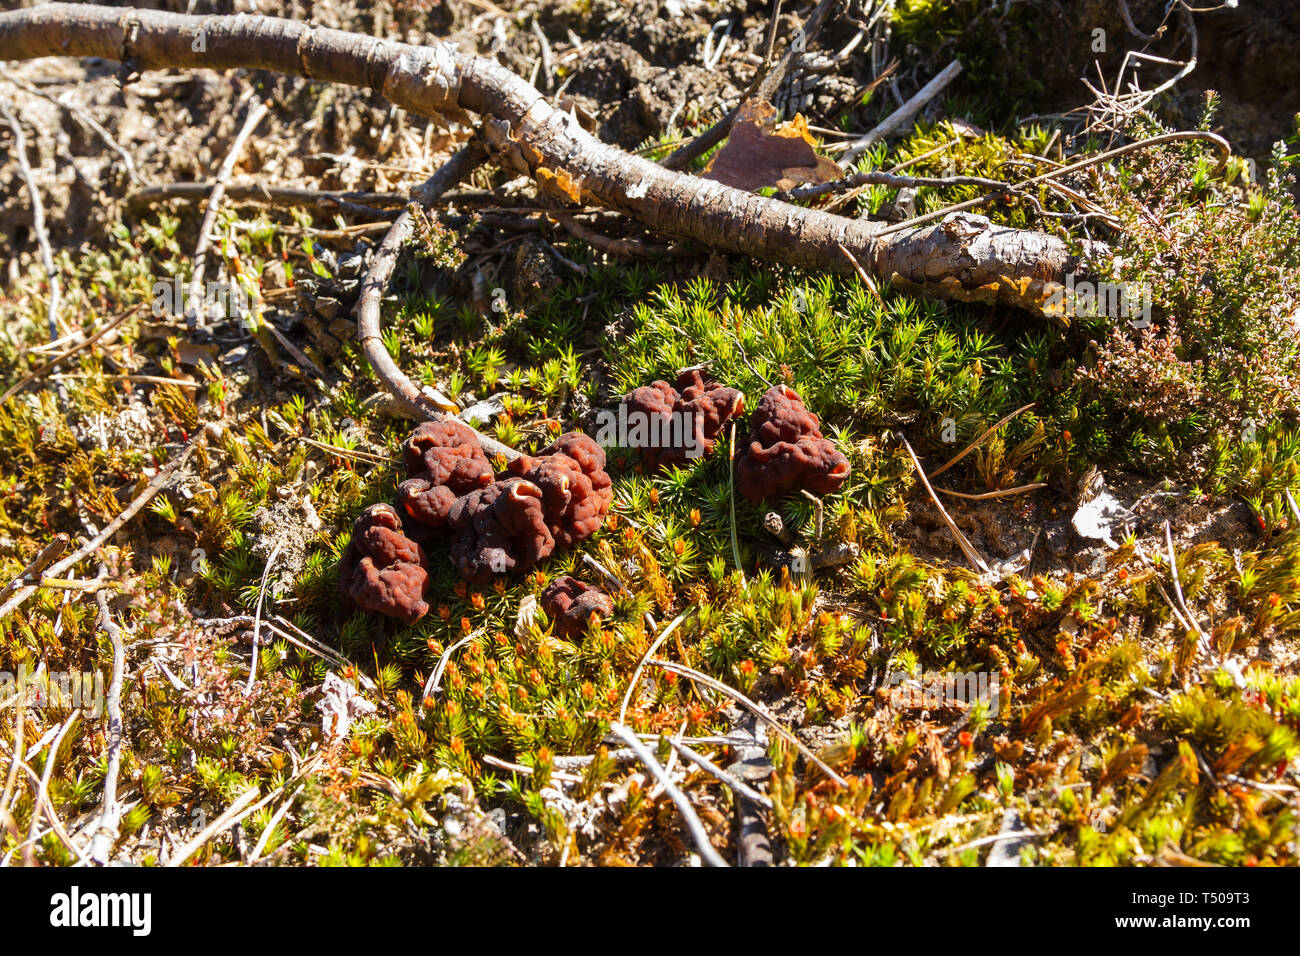 Mushrooms Gyromitra in forest in spring, wildlife scene Stock Photo